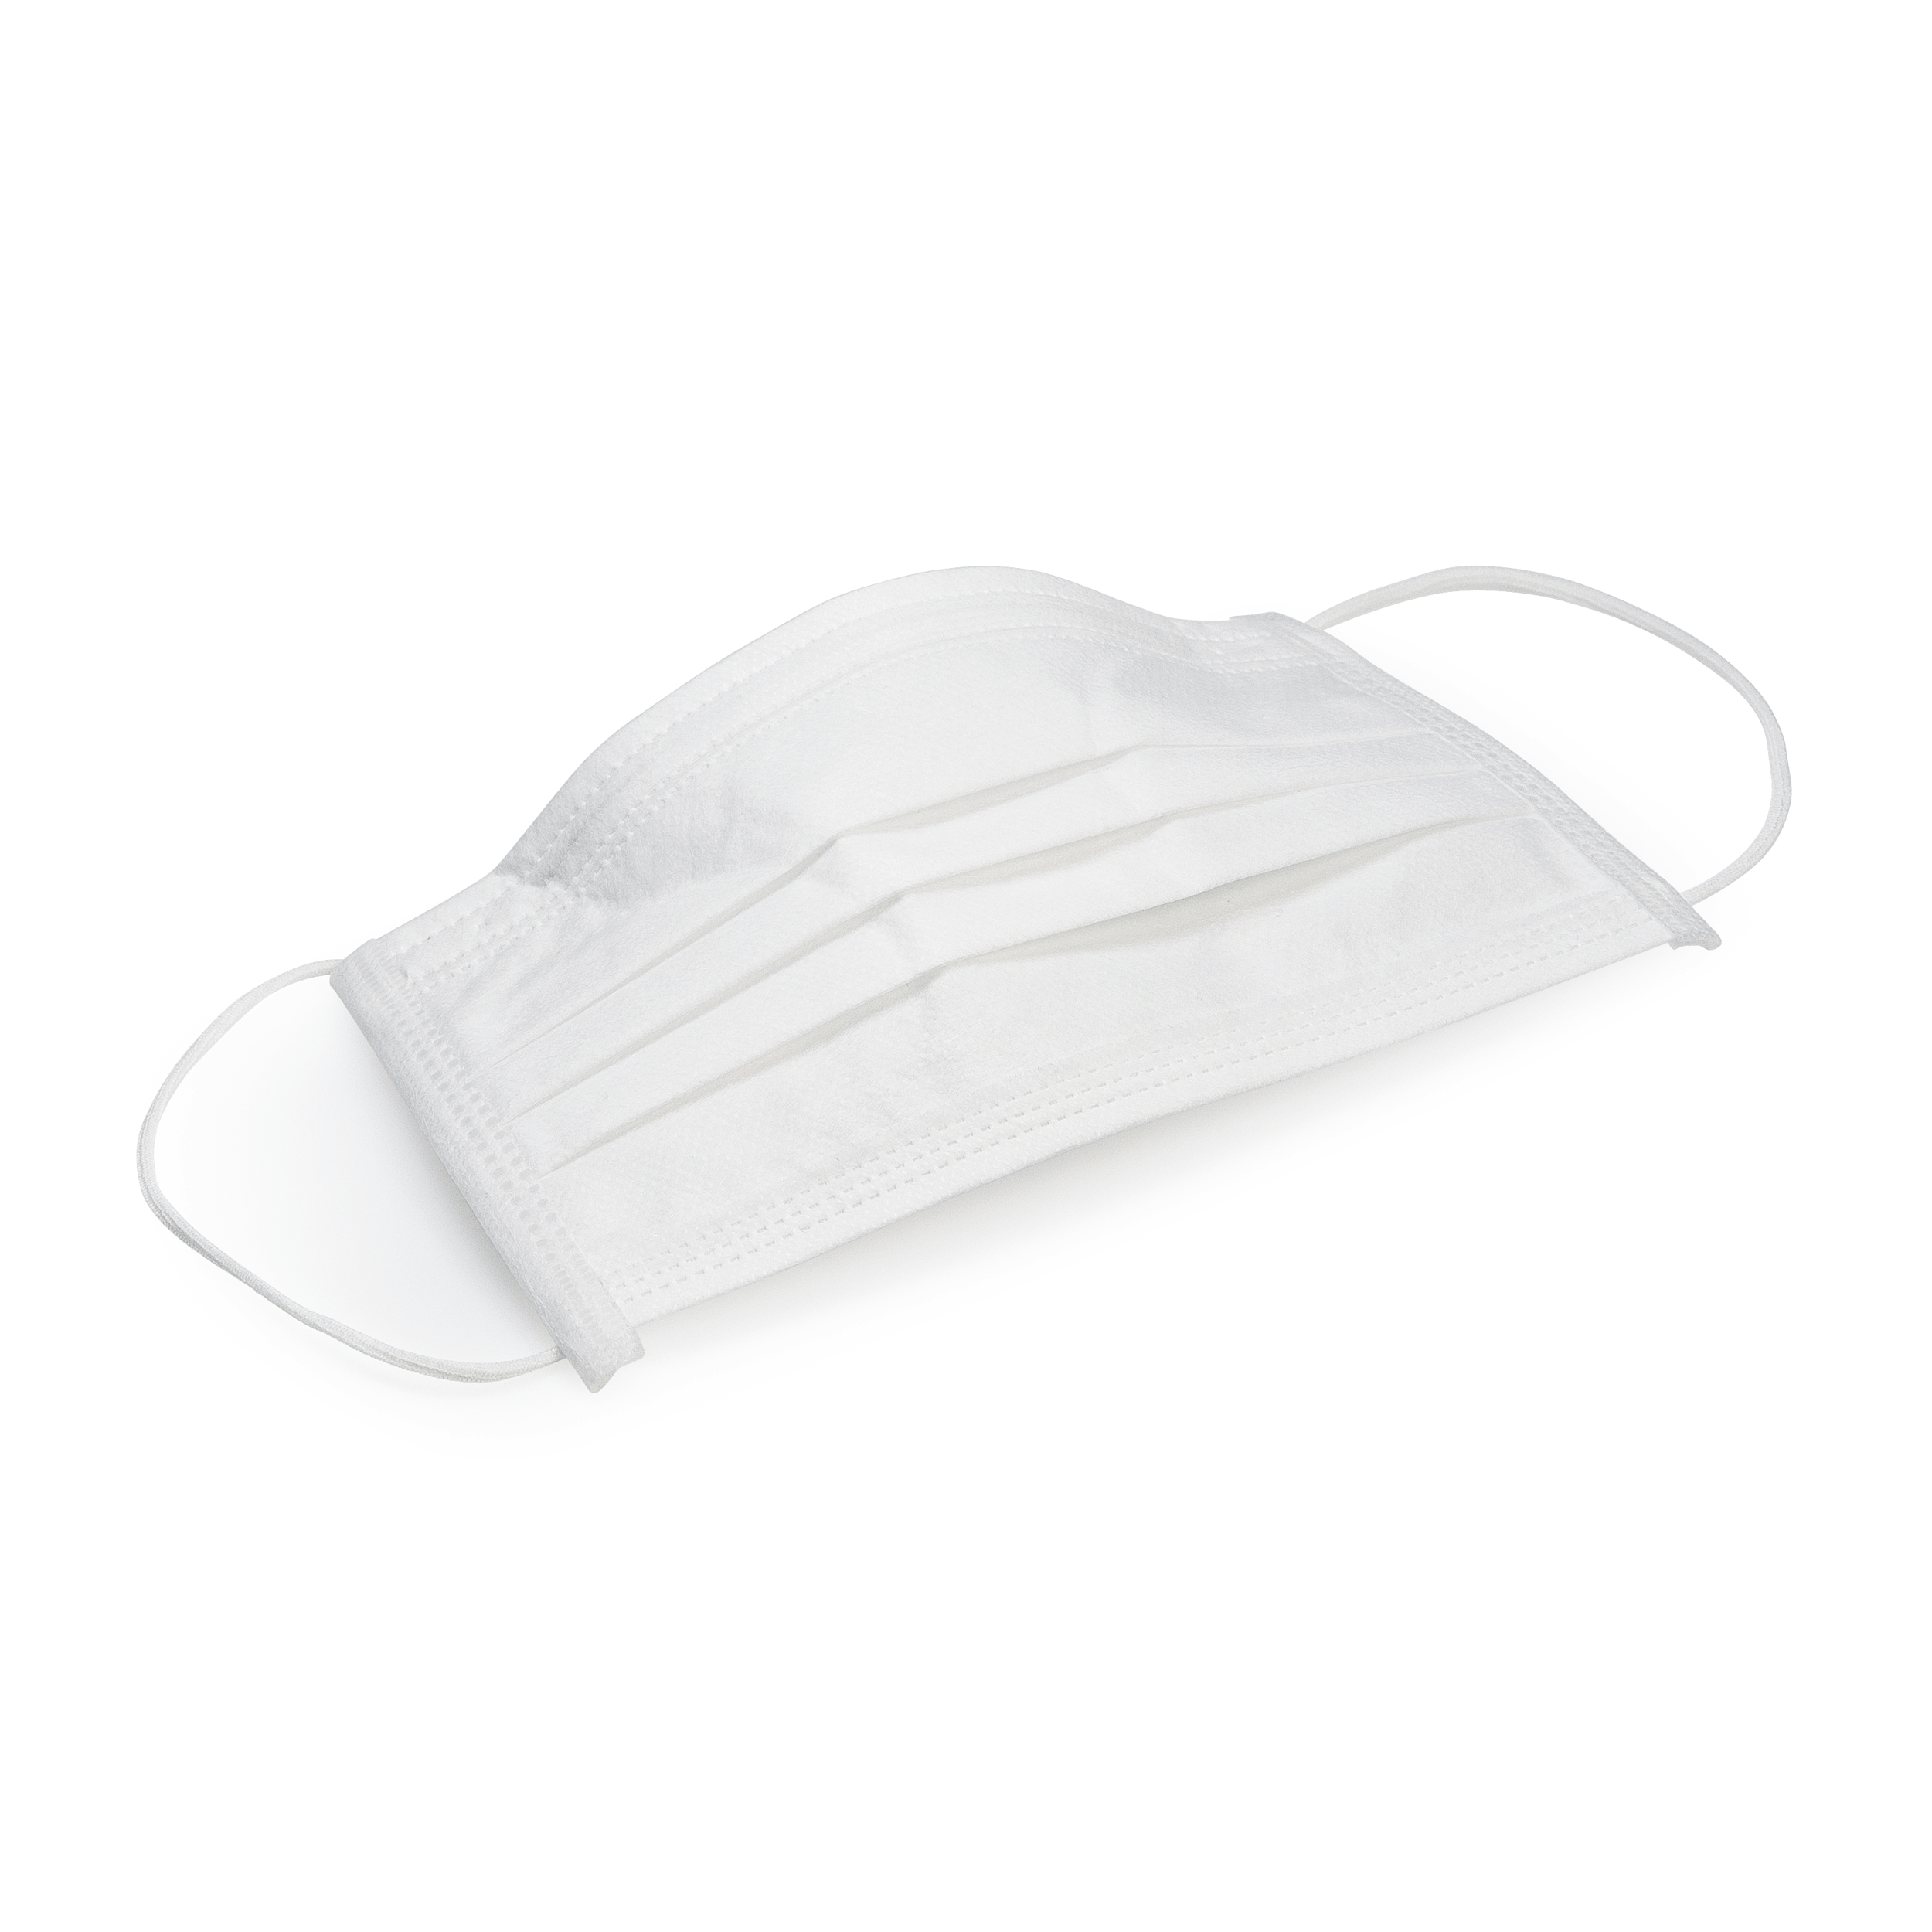 BAEHR Mundschutzmasken ECO white, 1 Pack (50 Stück)